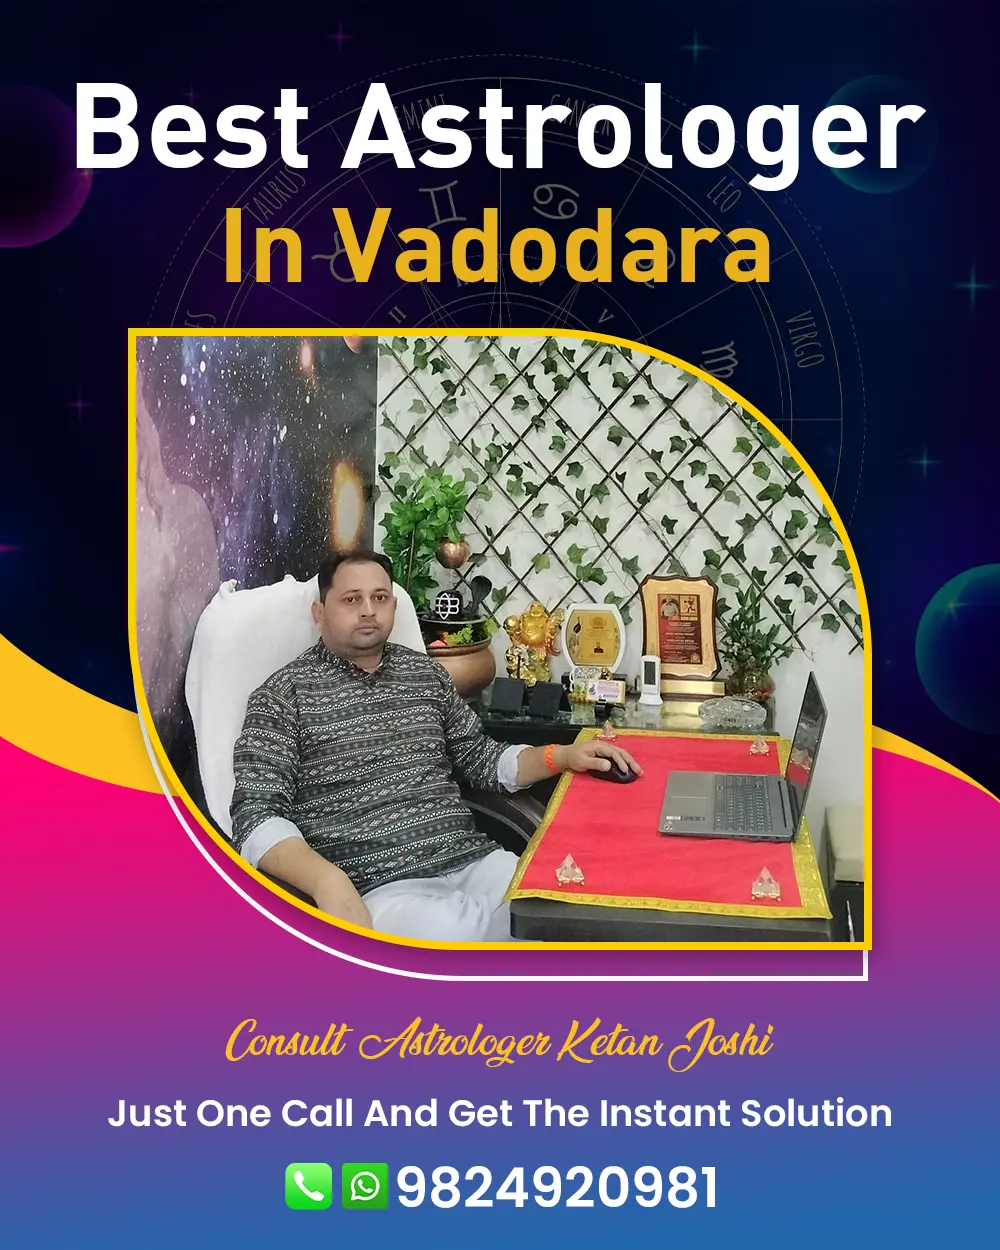 Best Astrologer In Vadodara